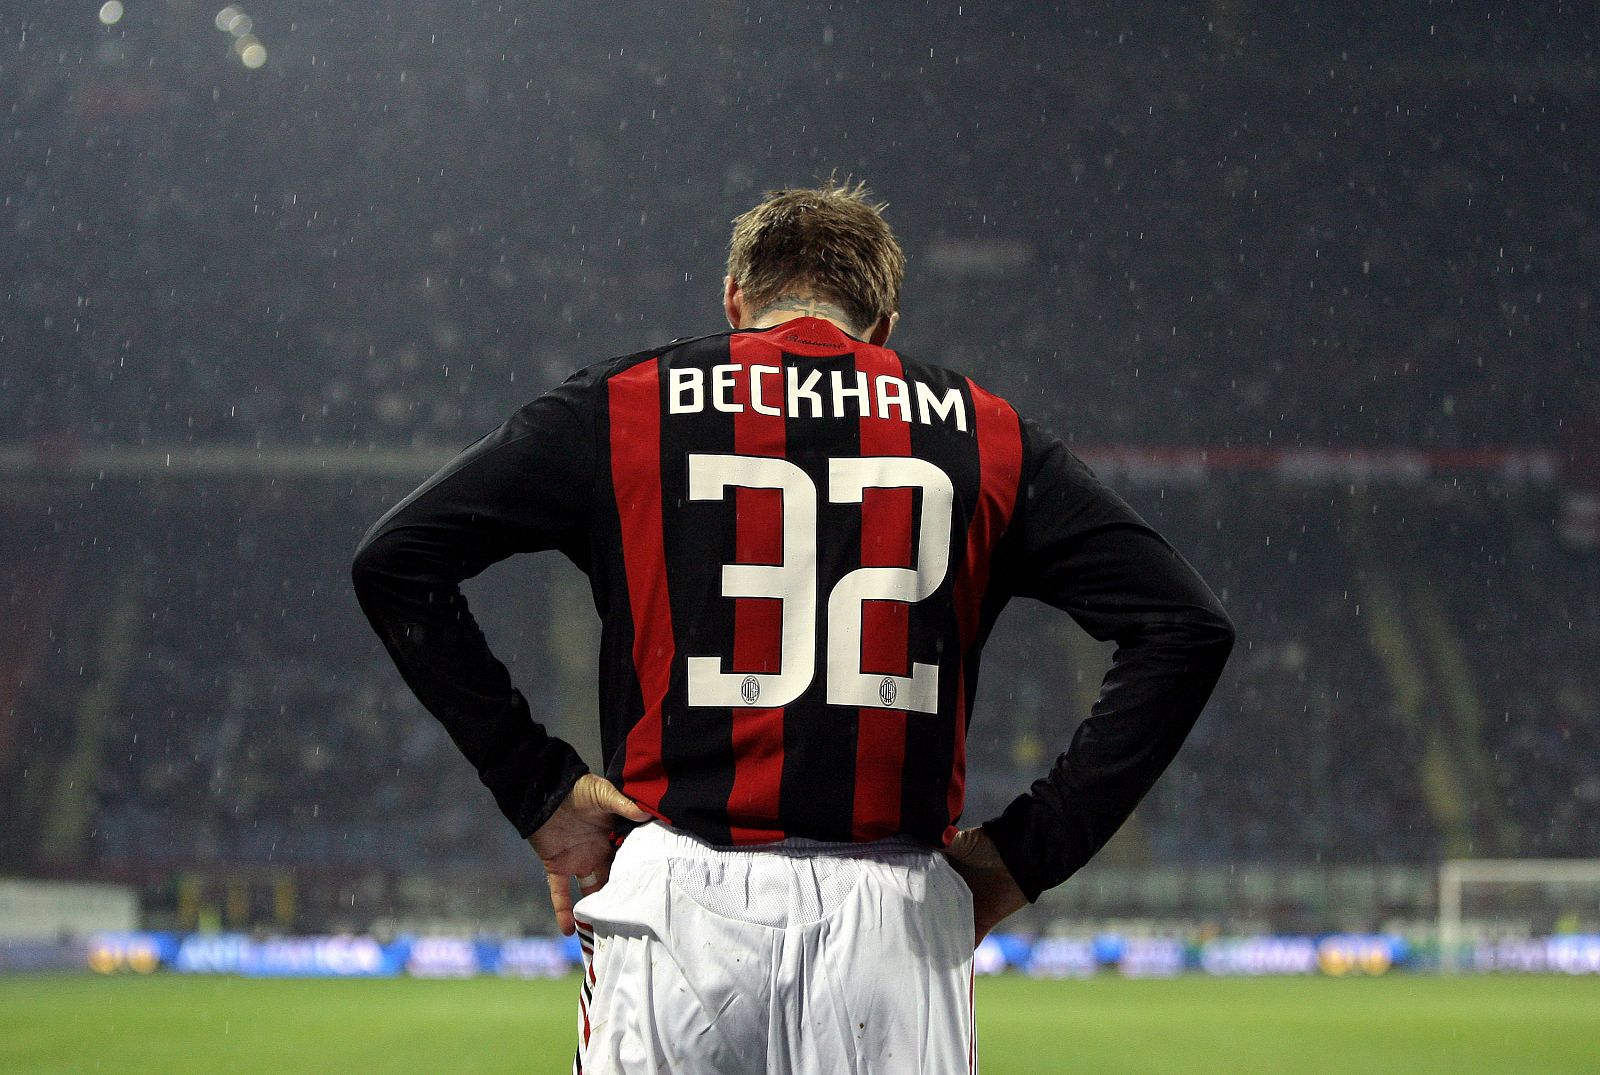 Beckham mira al suelo durante el partido con el Reggina, en la Serie A italiana.